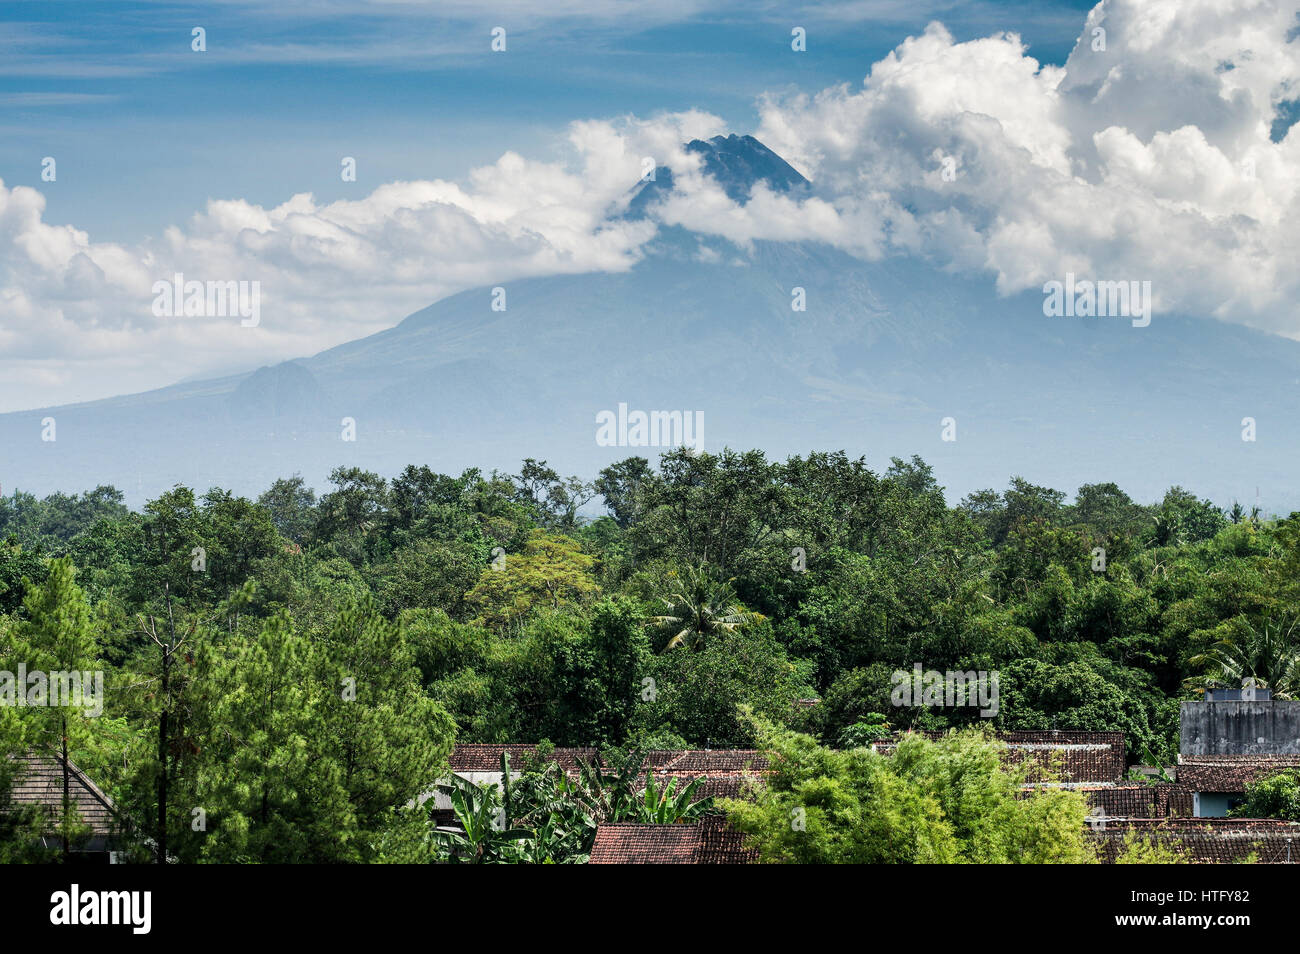 View of Gunung Merapi volcano from central Yogyakarta - Java, Indonesia Stock Photo